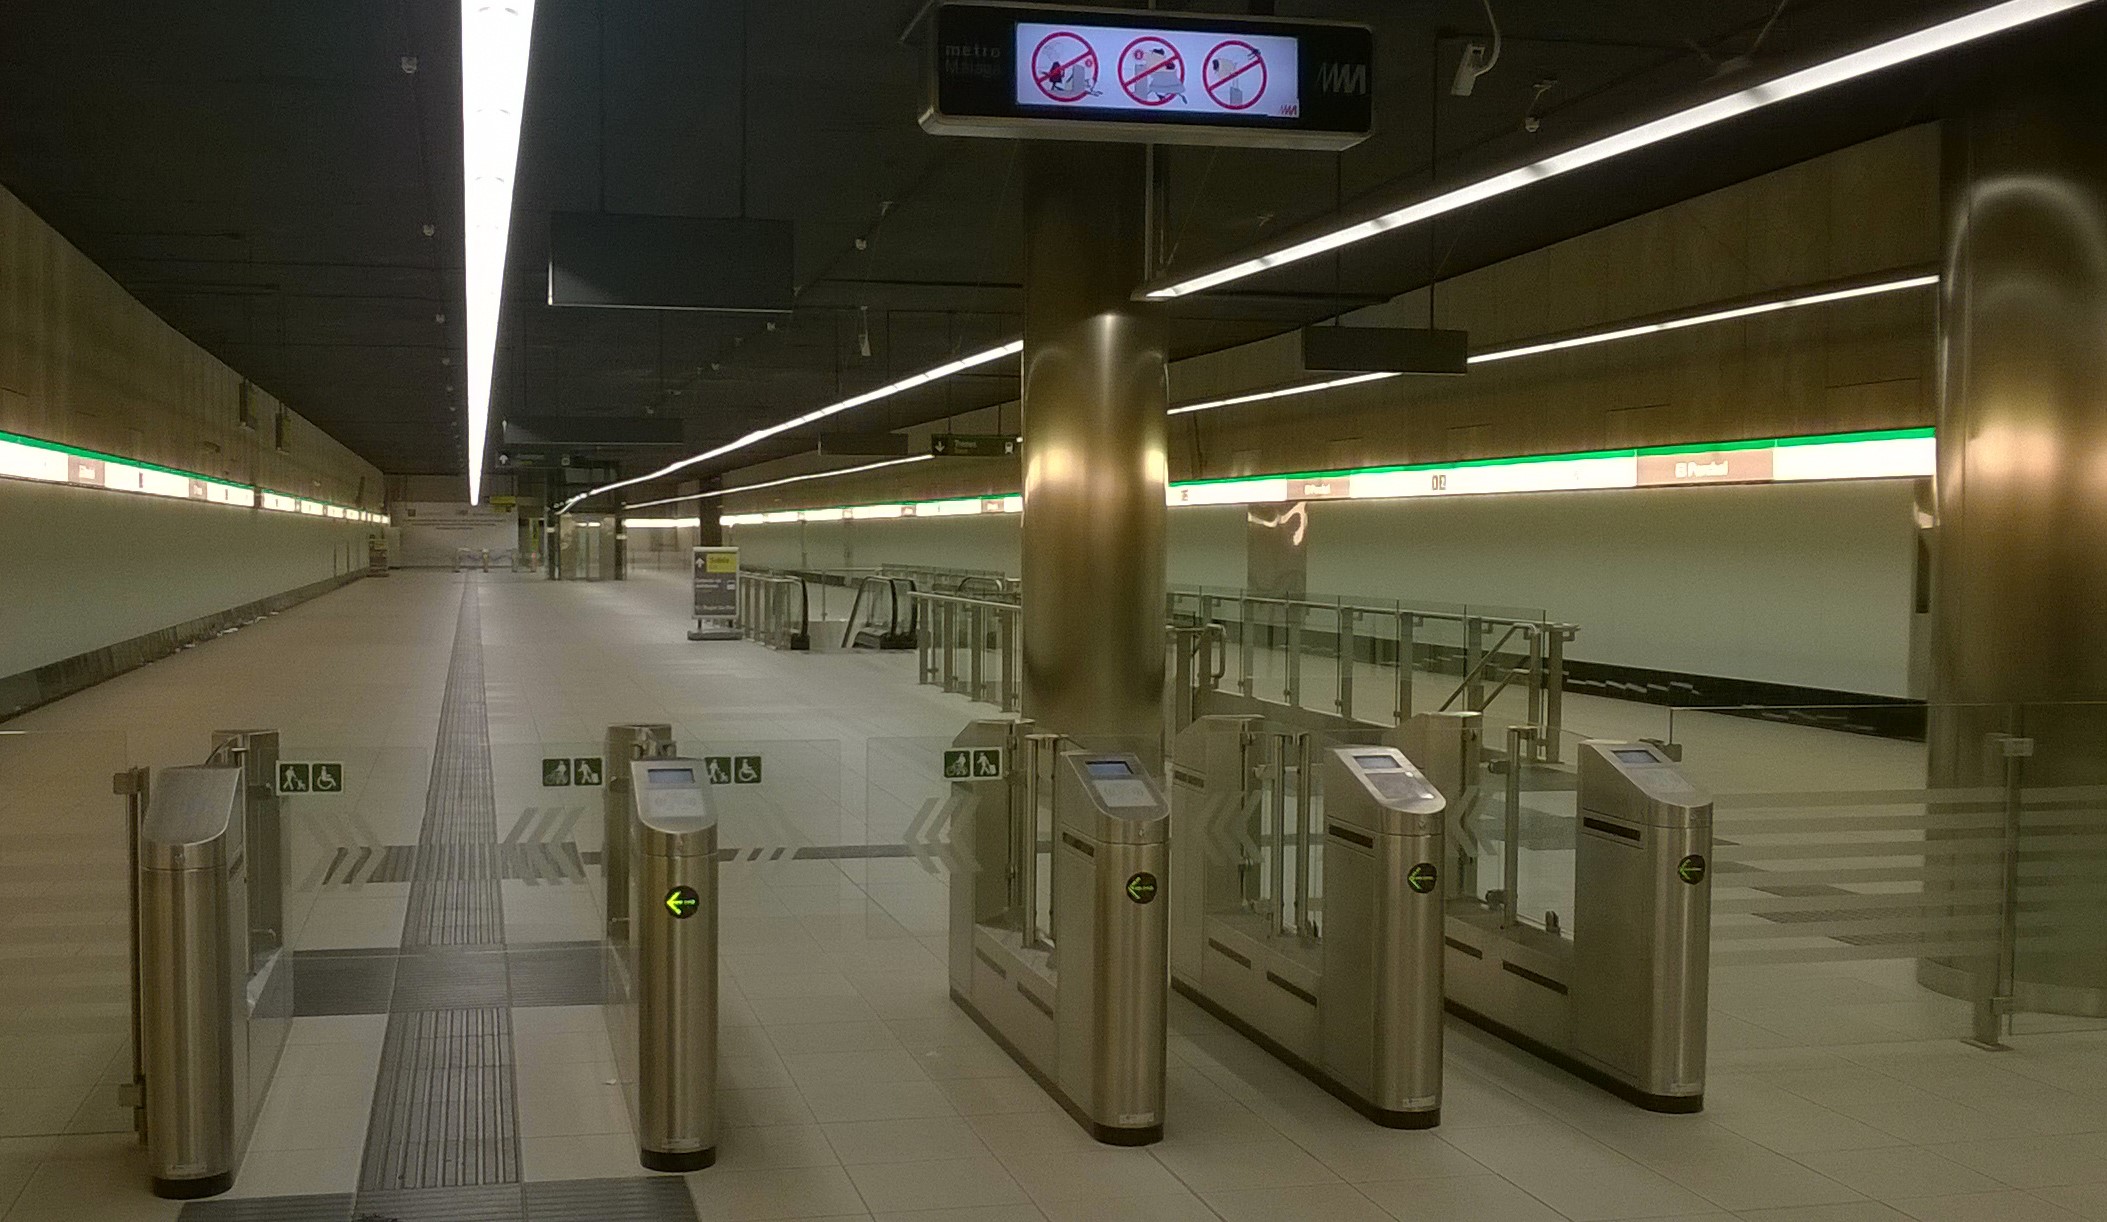 Appareils SlimLINE Transport pour le métro de Malaga